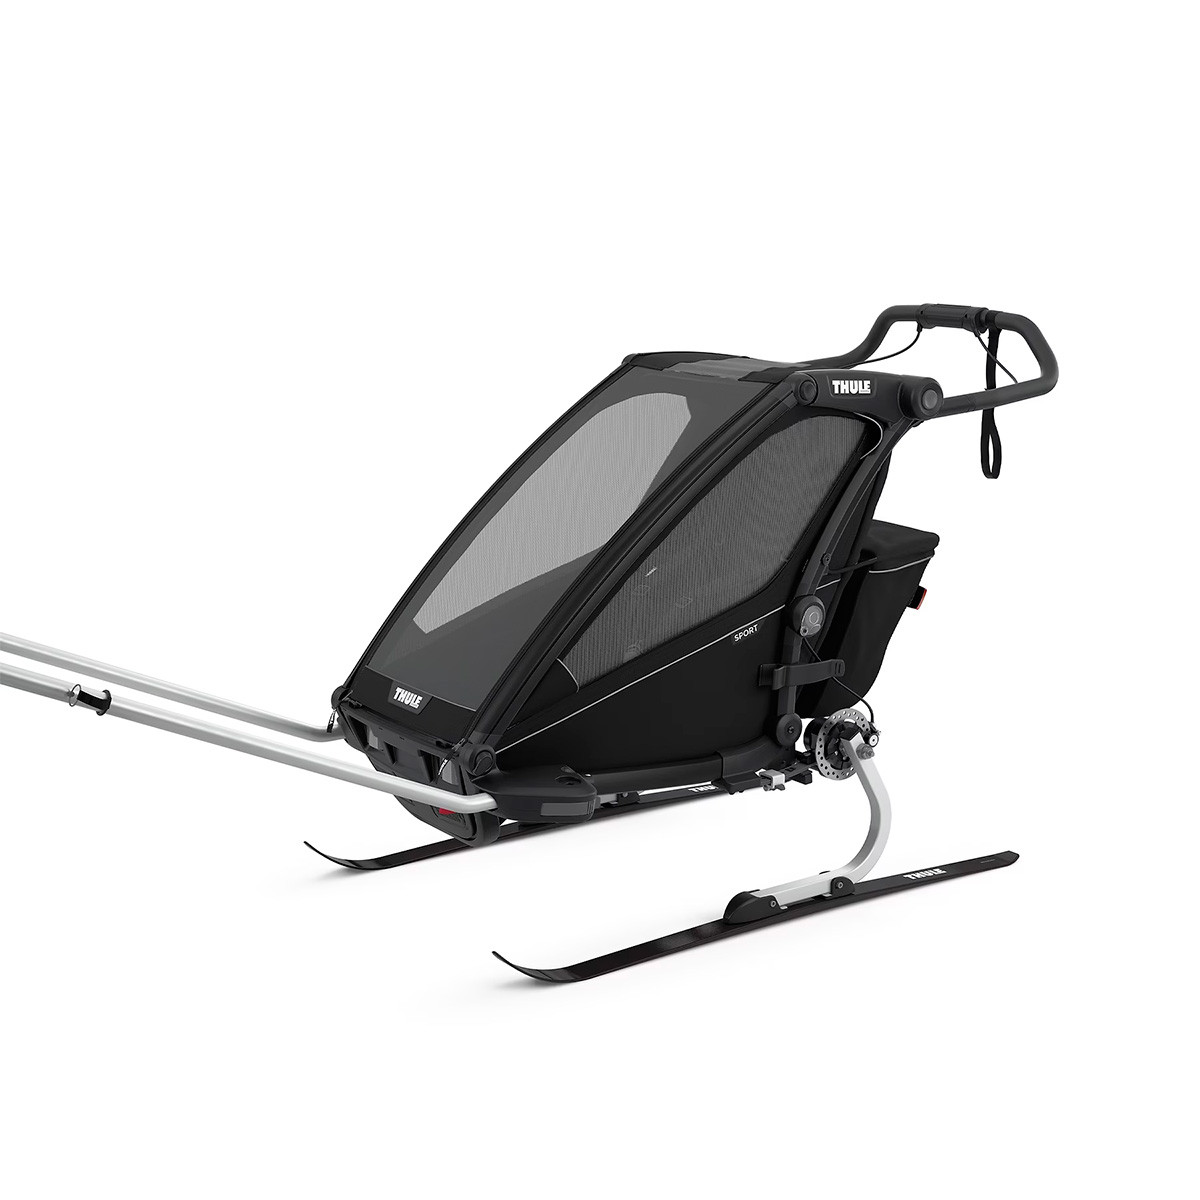 Remolque individual Chariot Sport de Thule, posibilidad de añadir el kit de esquí (se compra por separado)